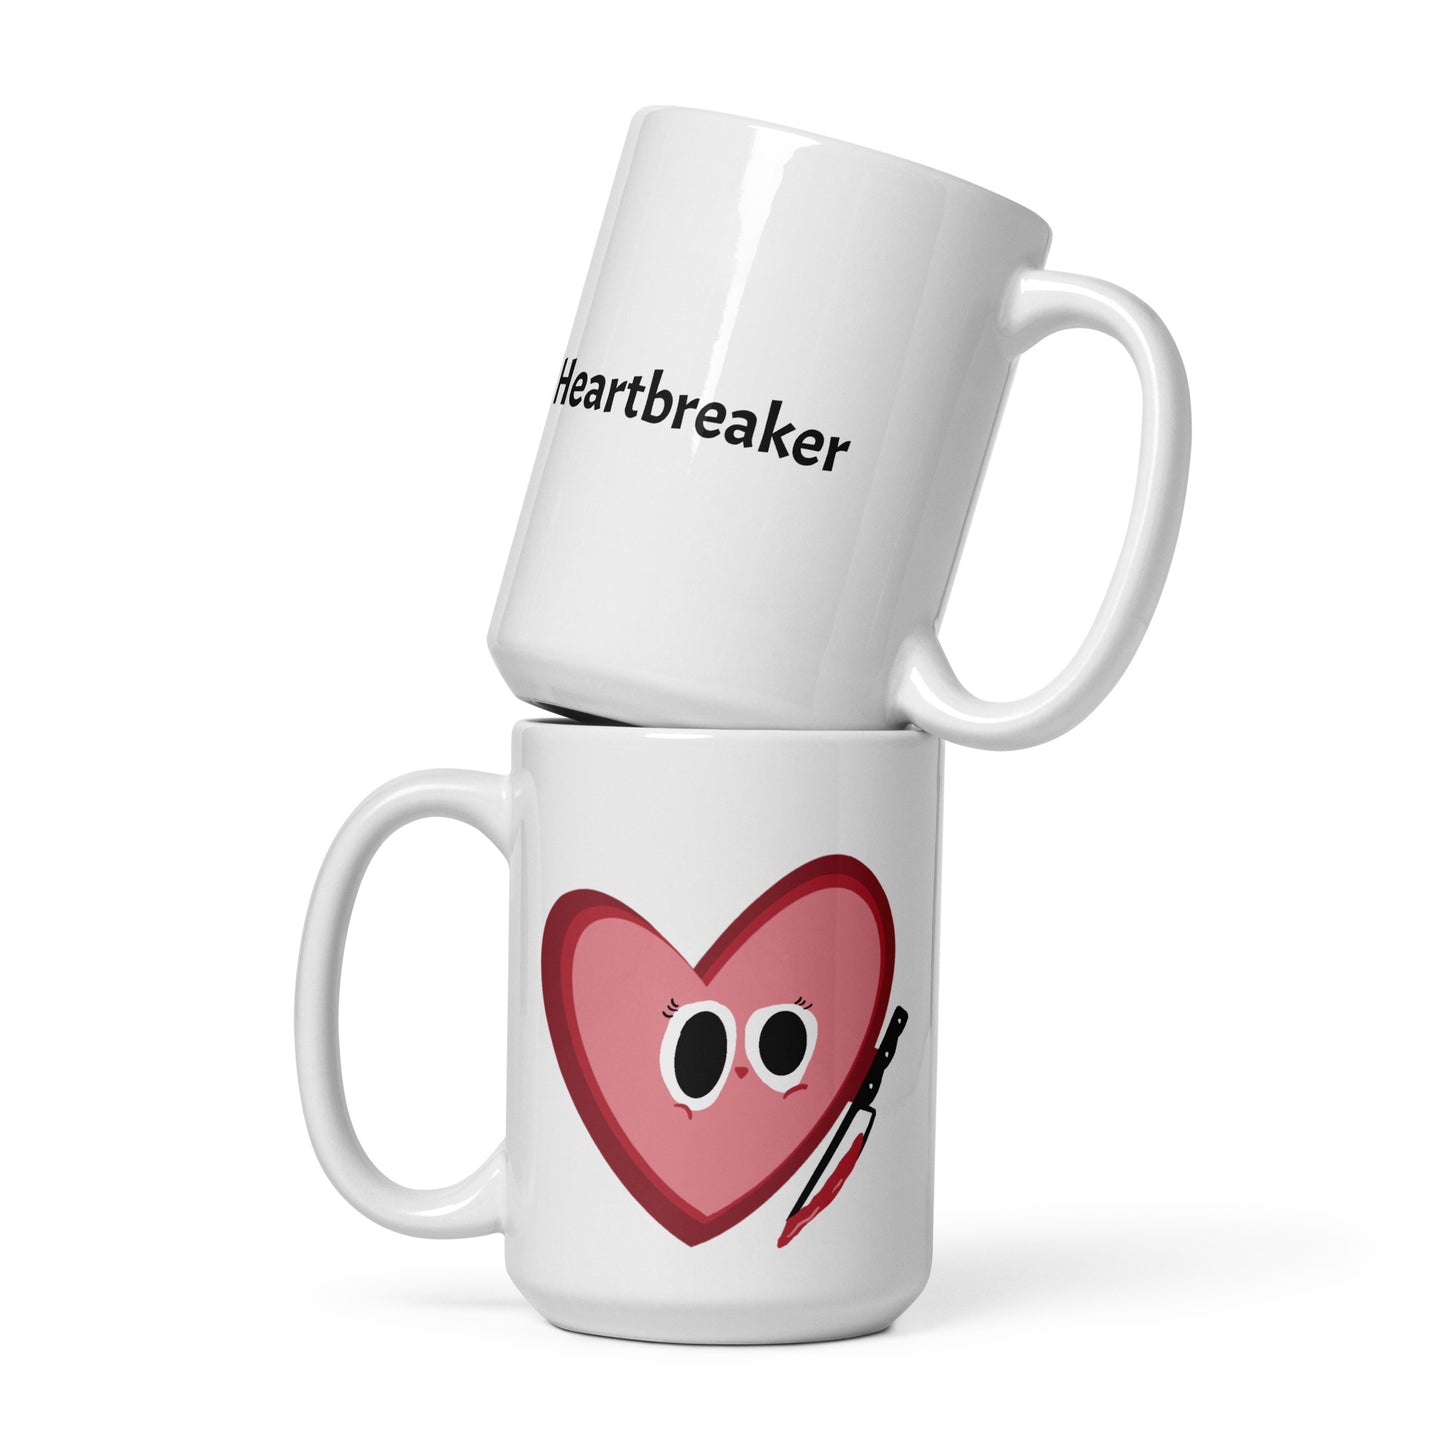 Heartbreaker - White glossy mug